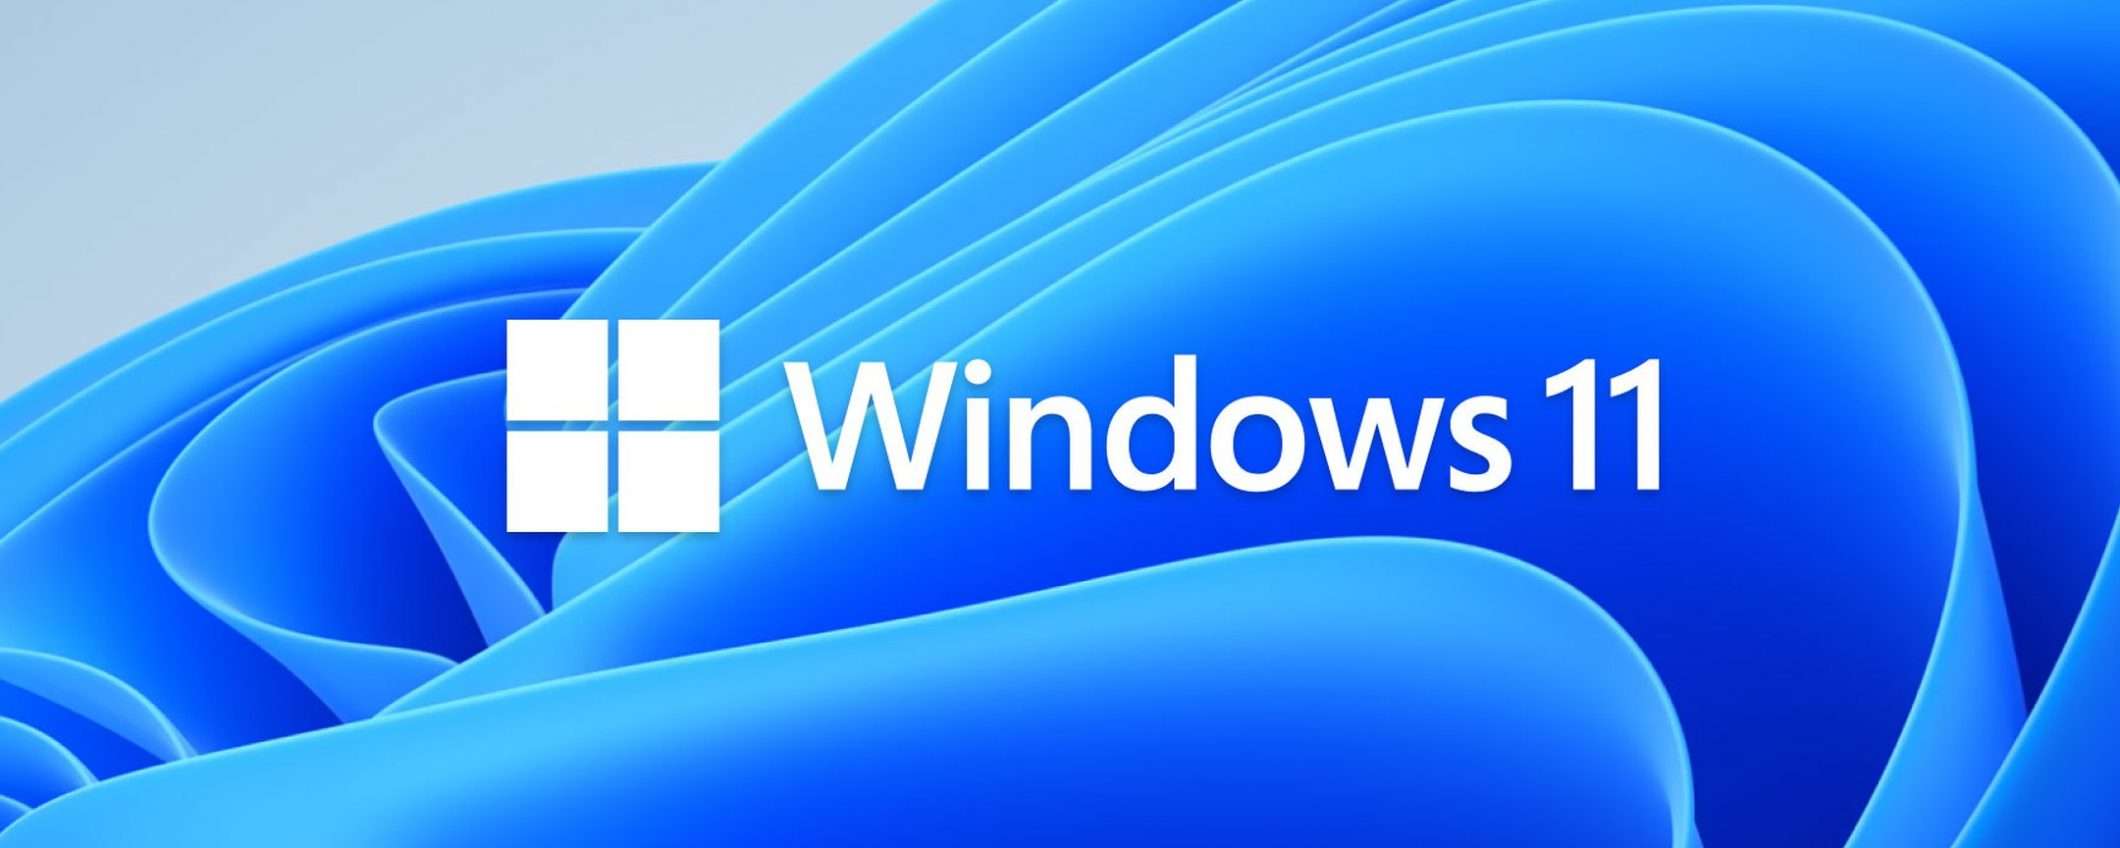 Windows 11: funzionalità rimosse dopo l'upgrade